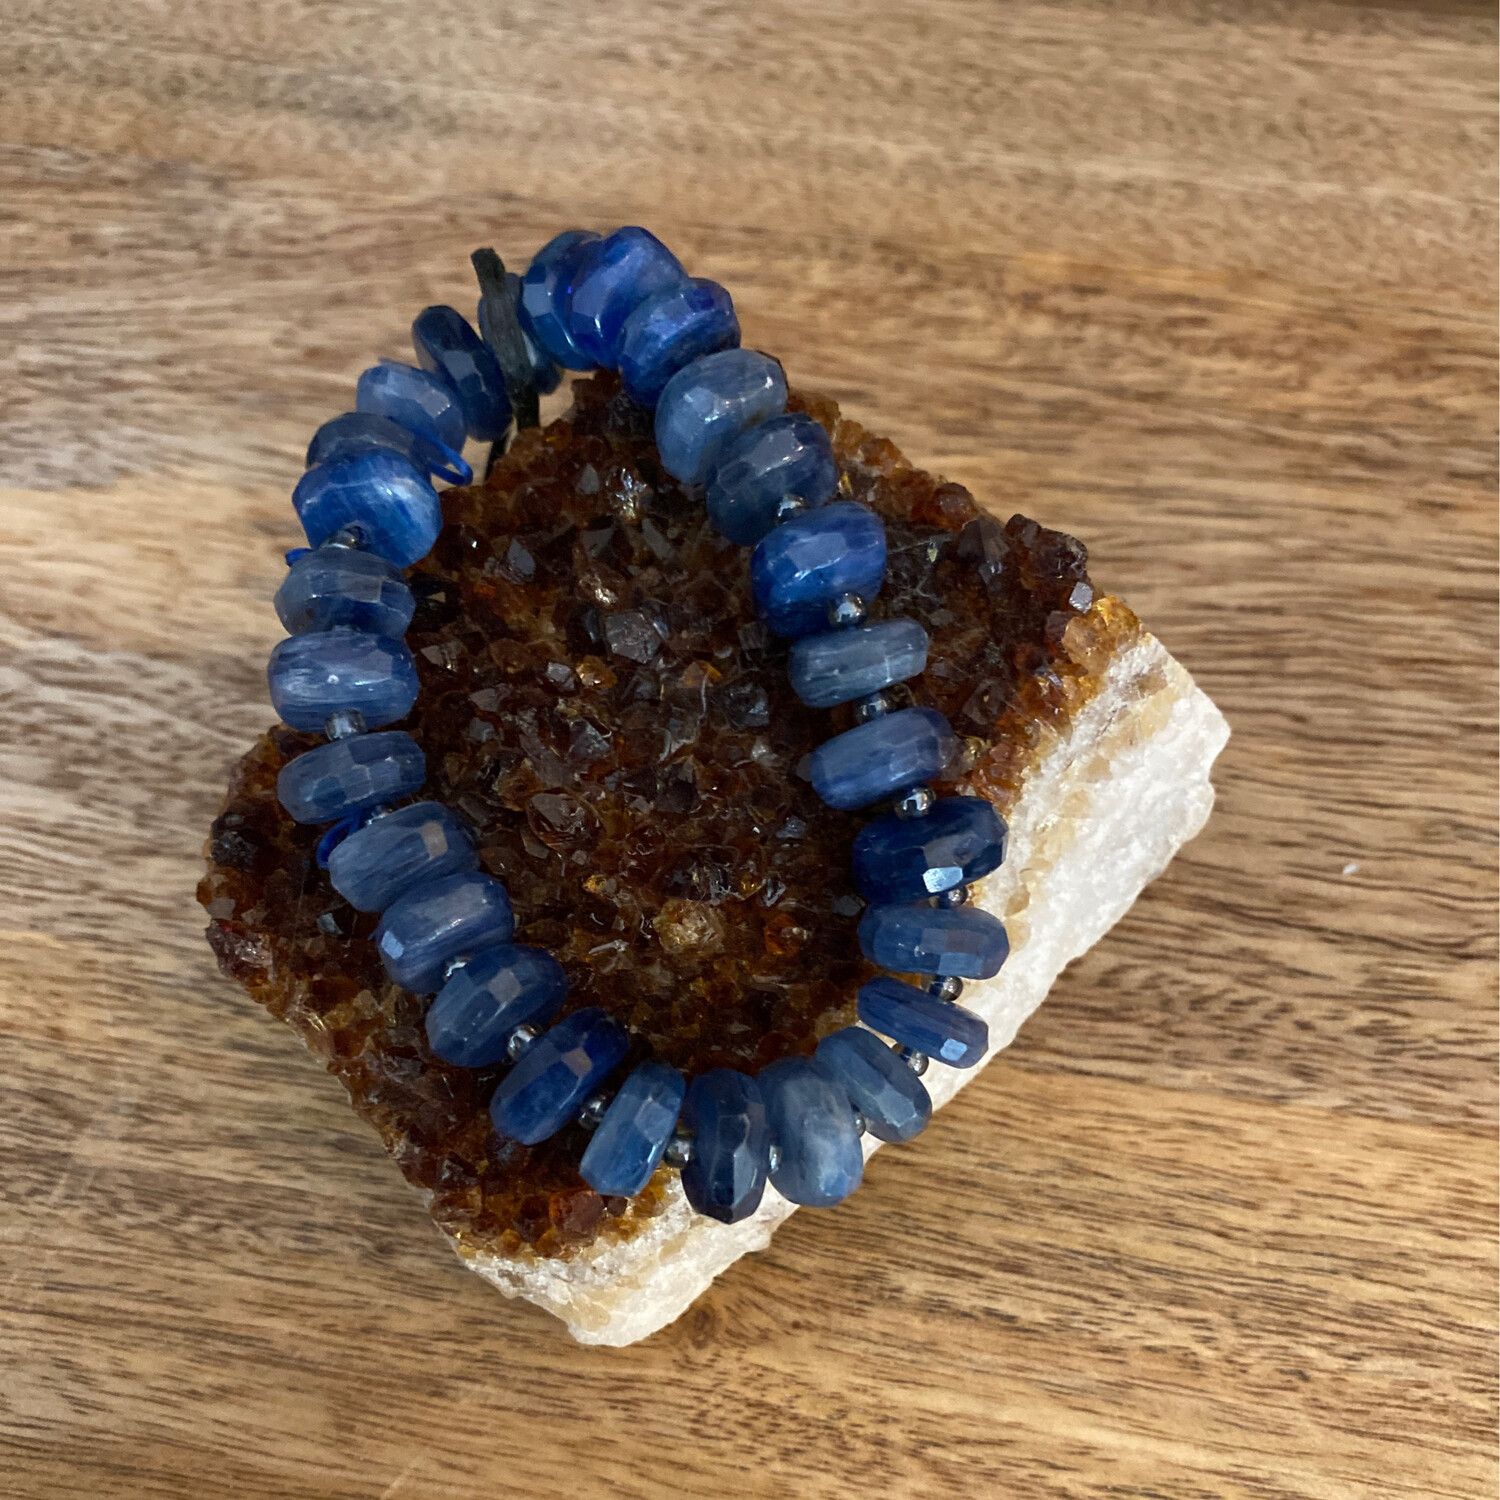 Blue Sodalite Bead Bracelet